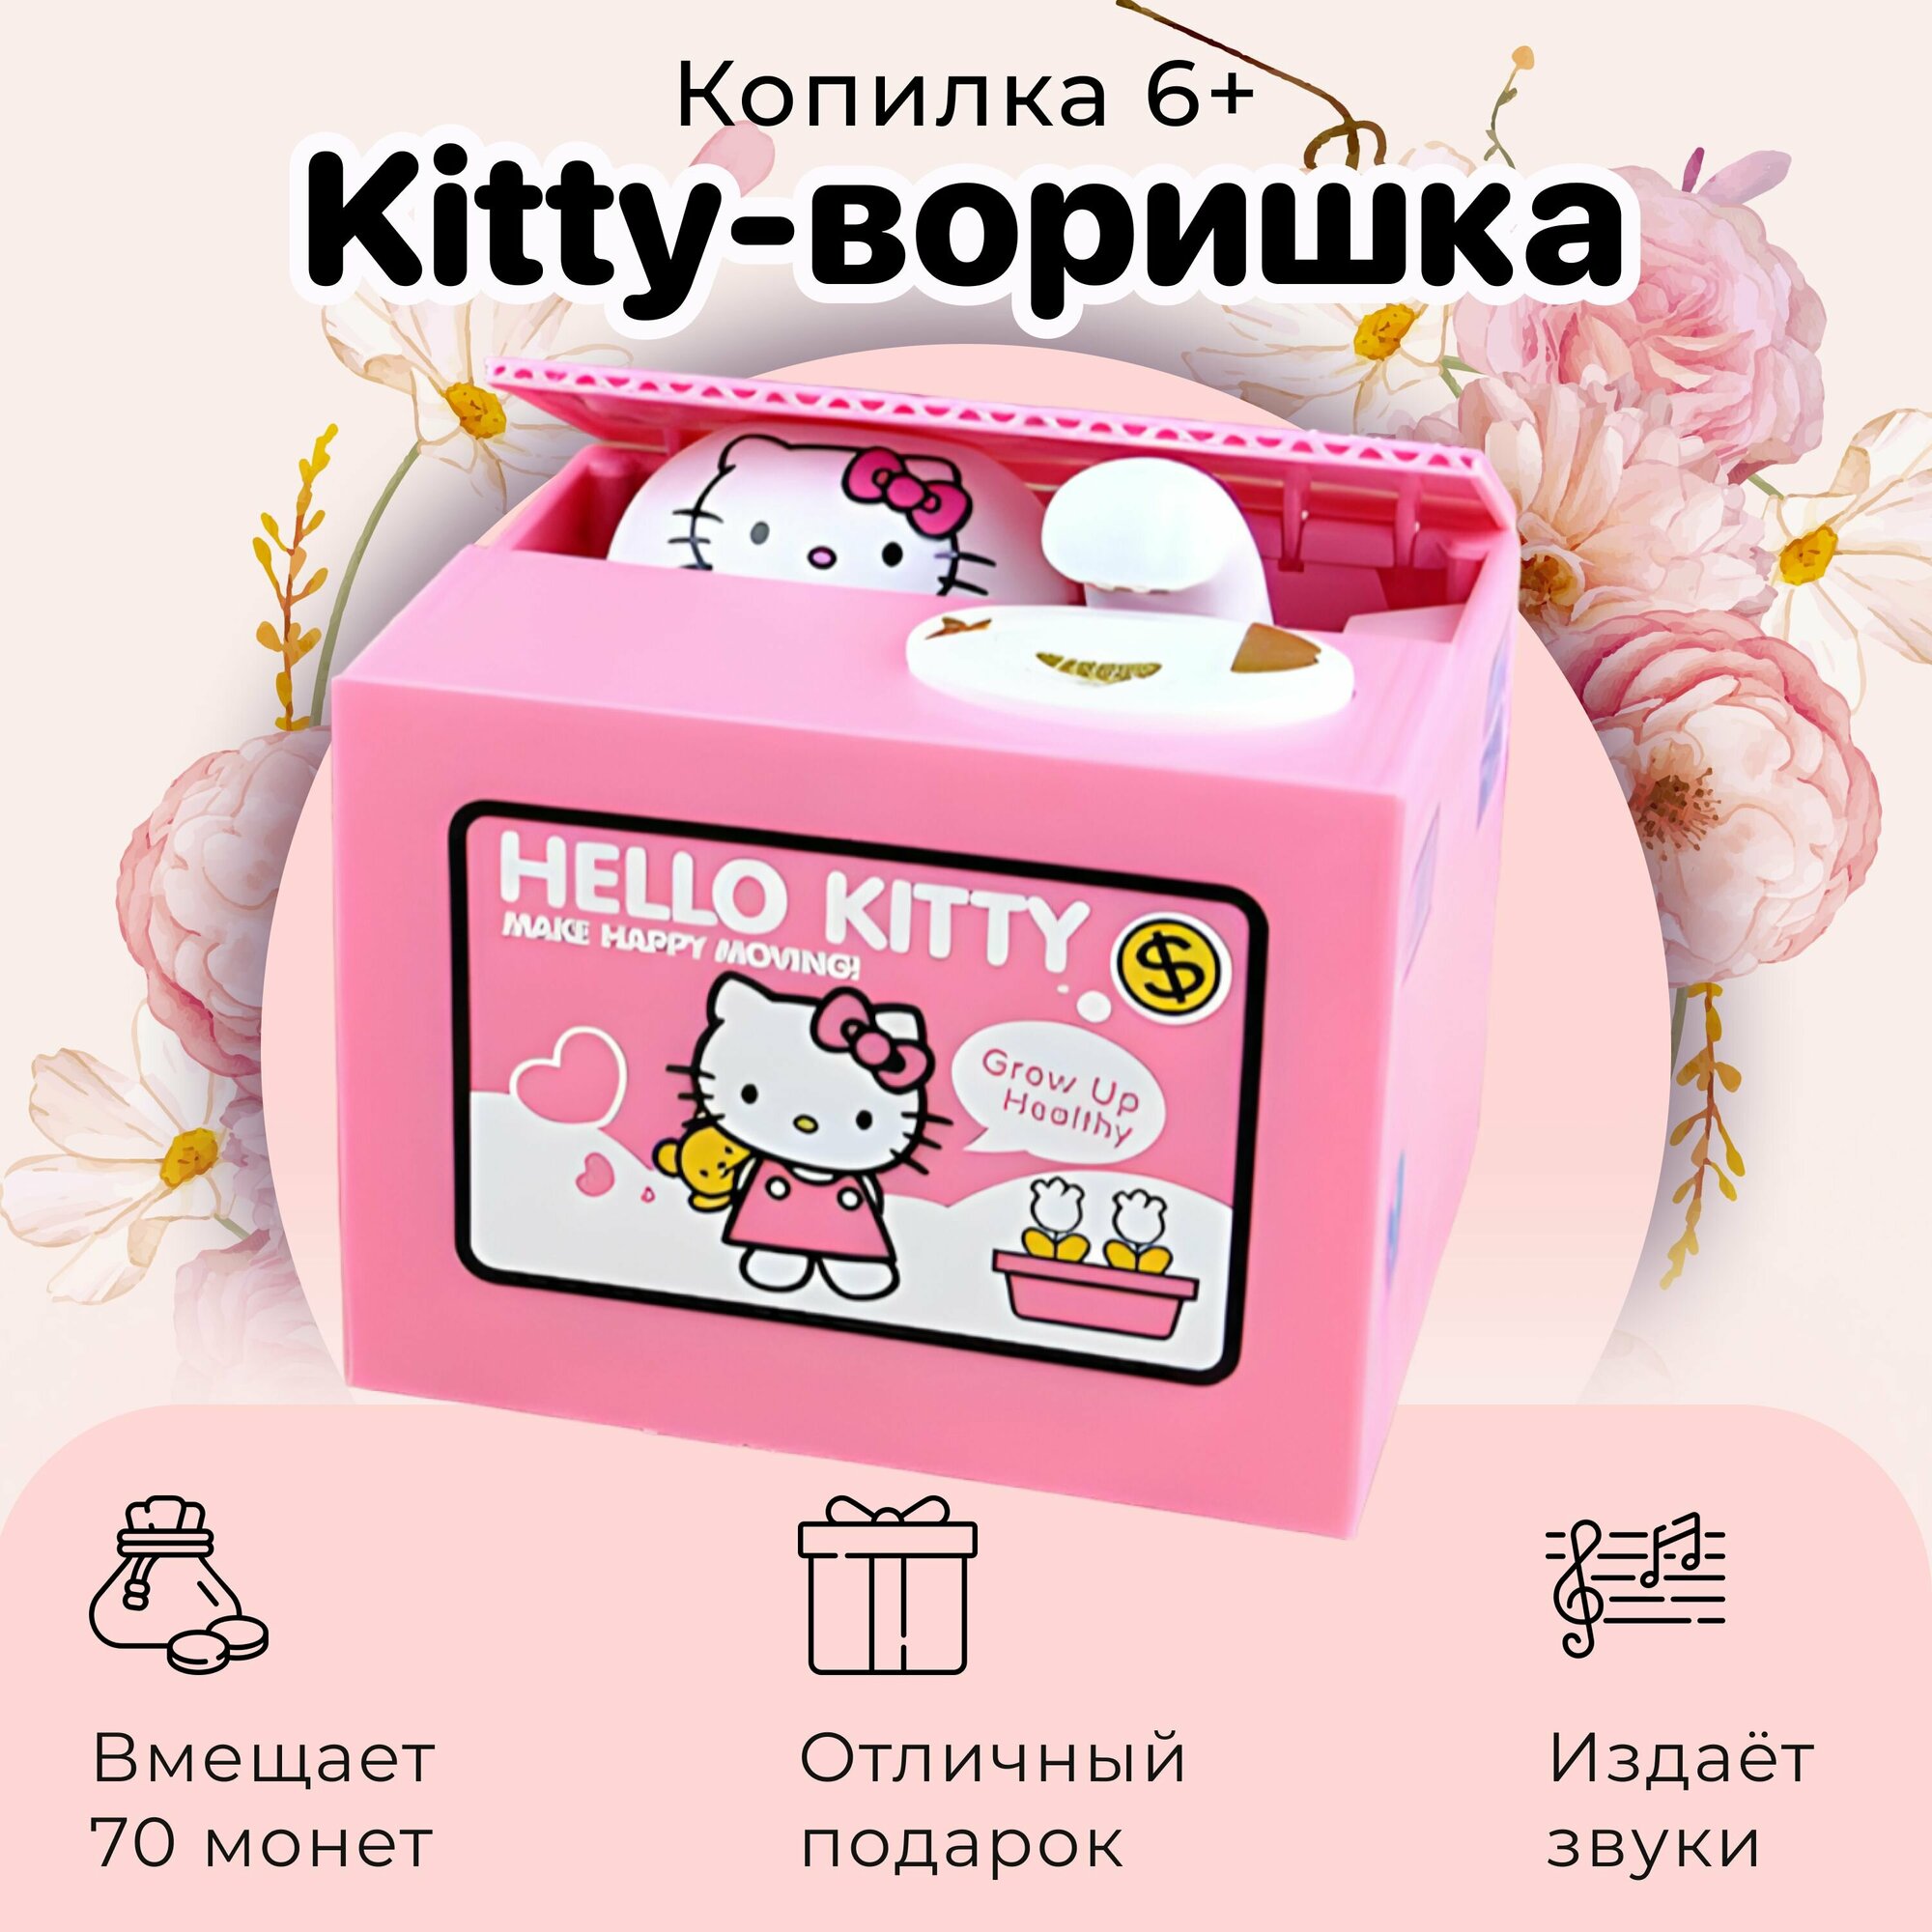 Копилка "Hello Kitty" для детей. Интерактивная игрушка для ребёнка